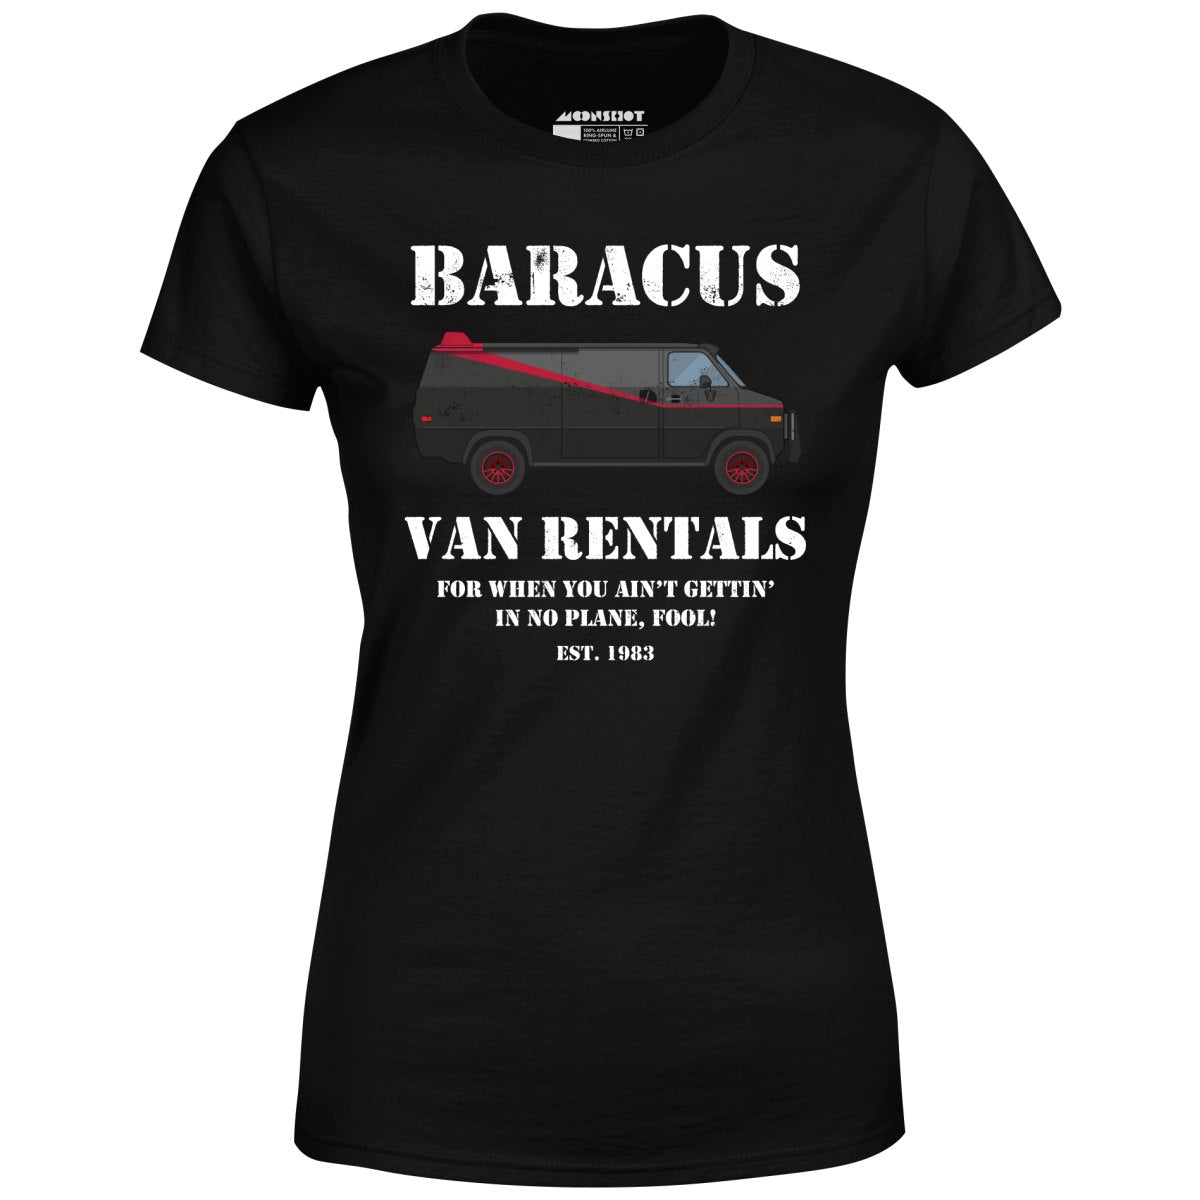 Baracus Van Rentals - Women's T-Shirt